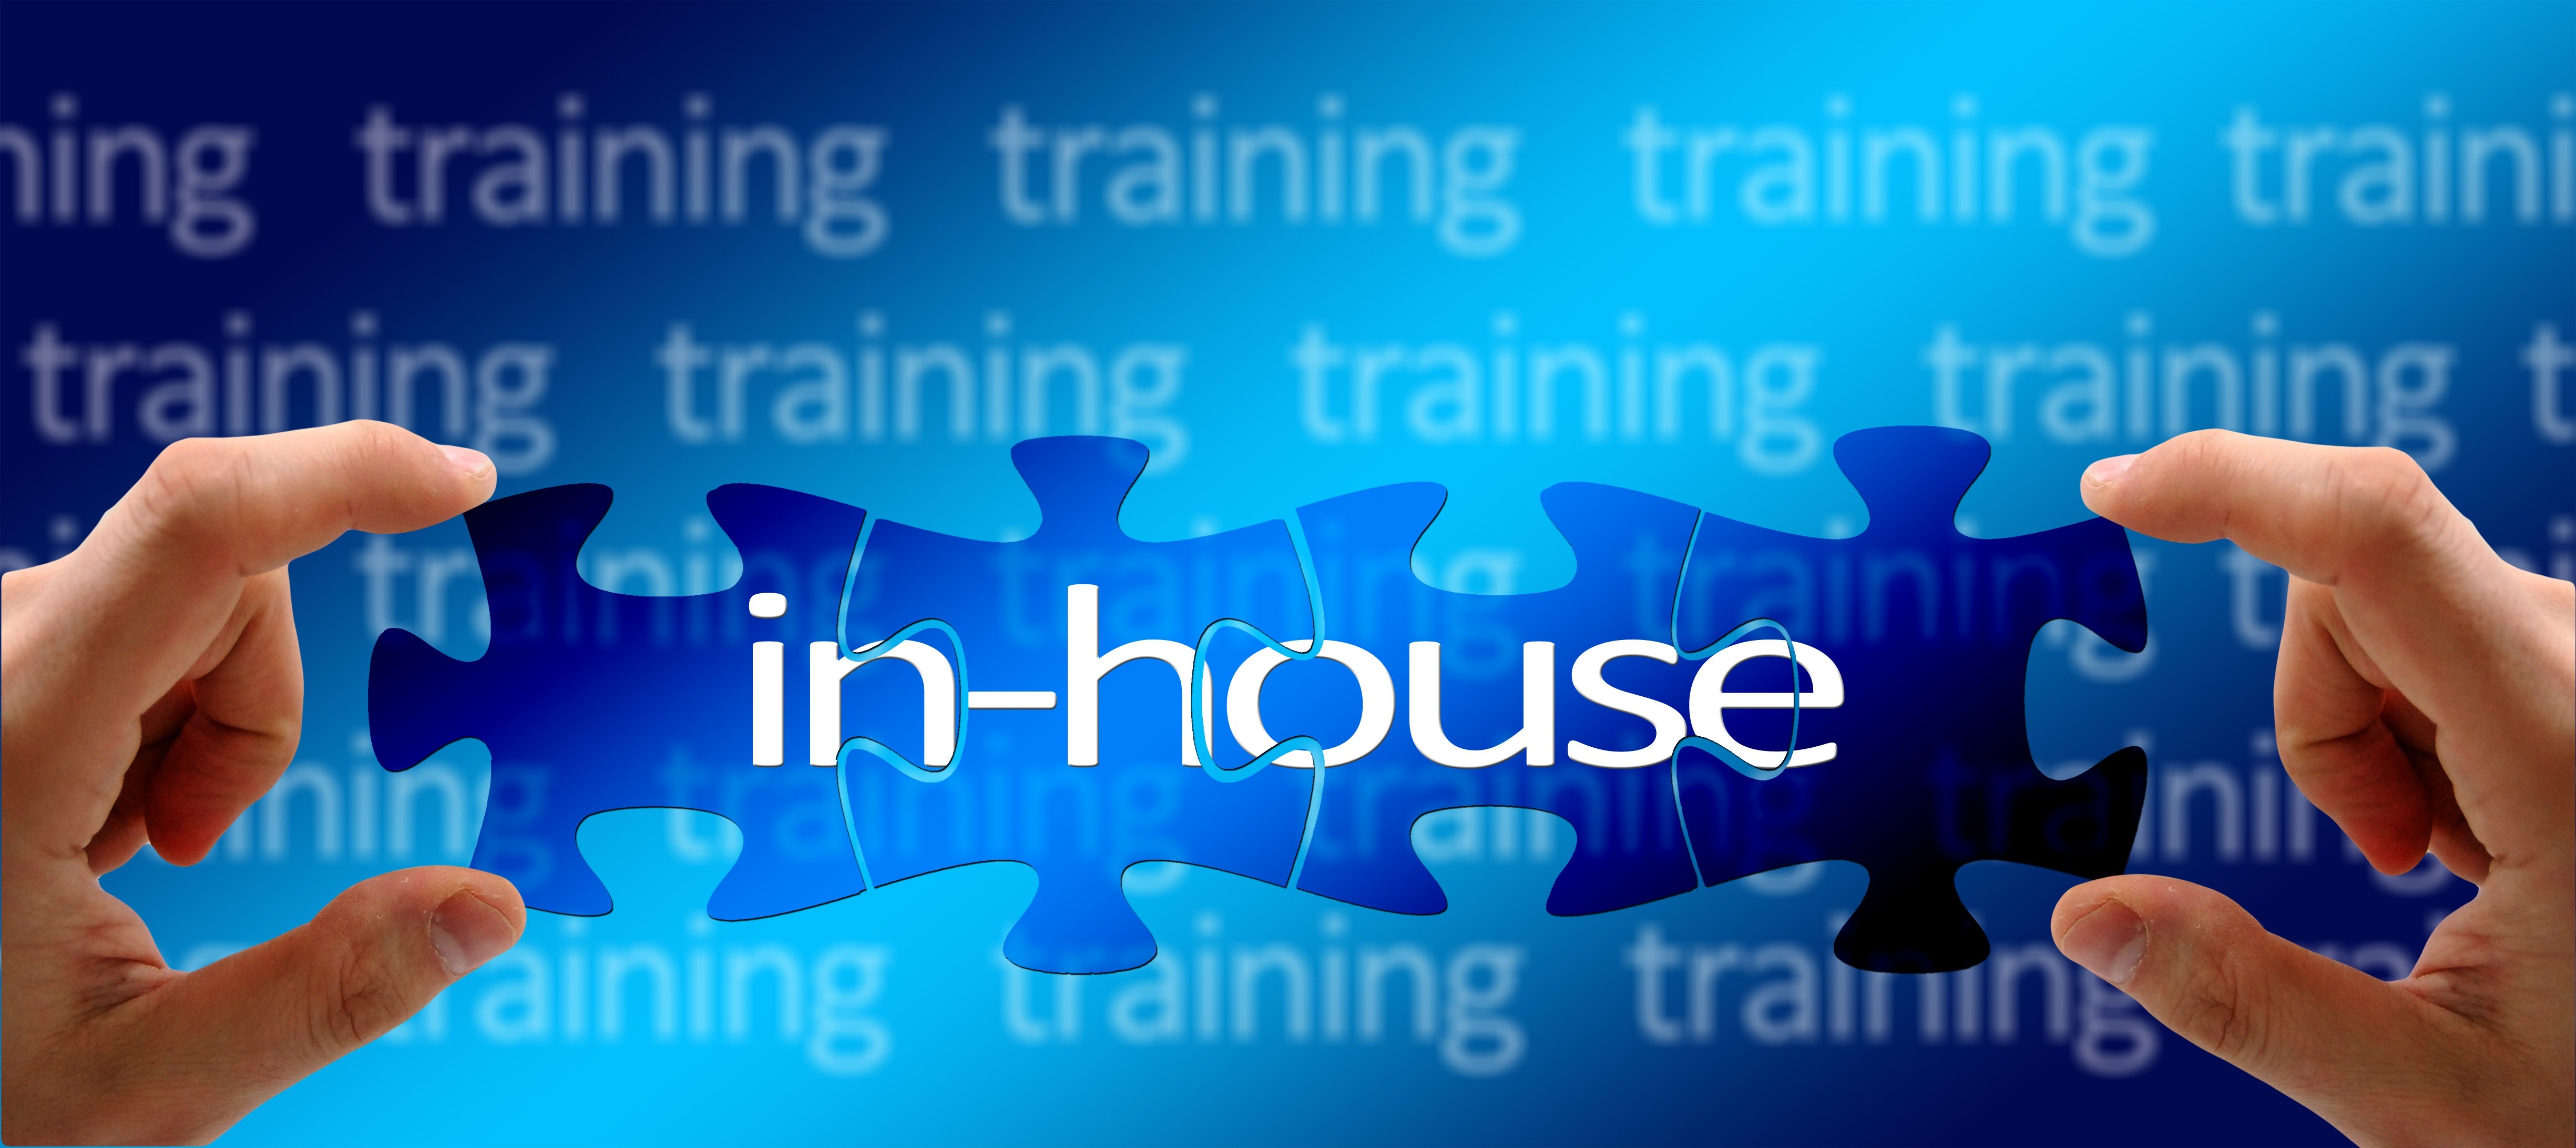 Bild mit Puzzleteilen, die sich zusammenfügen und Schrift "in-house", im Hintergrund "training"